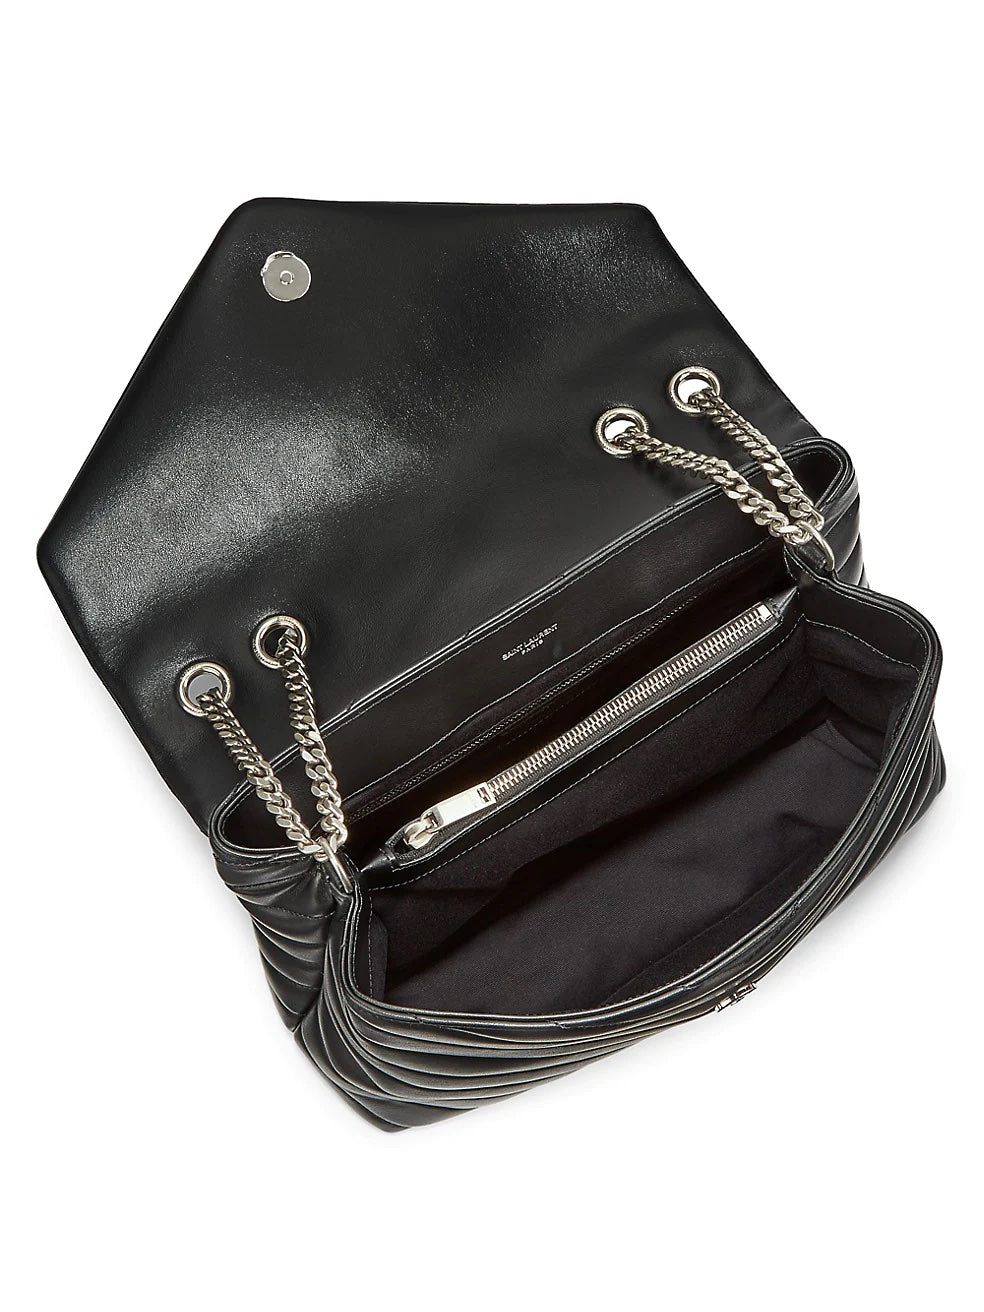 Saint Laurent Medium Loulou Matelassé Leather Shoulder Bag